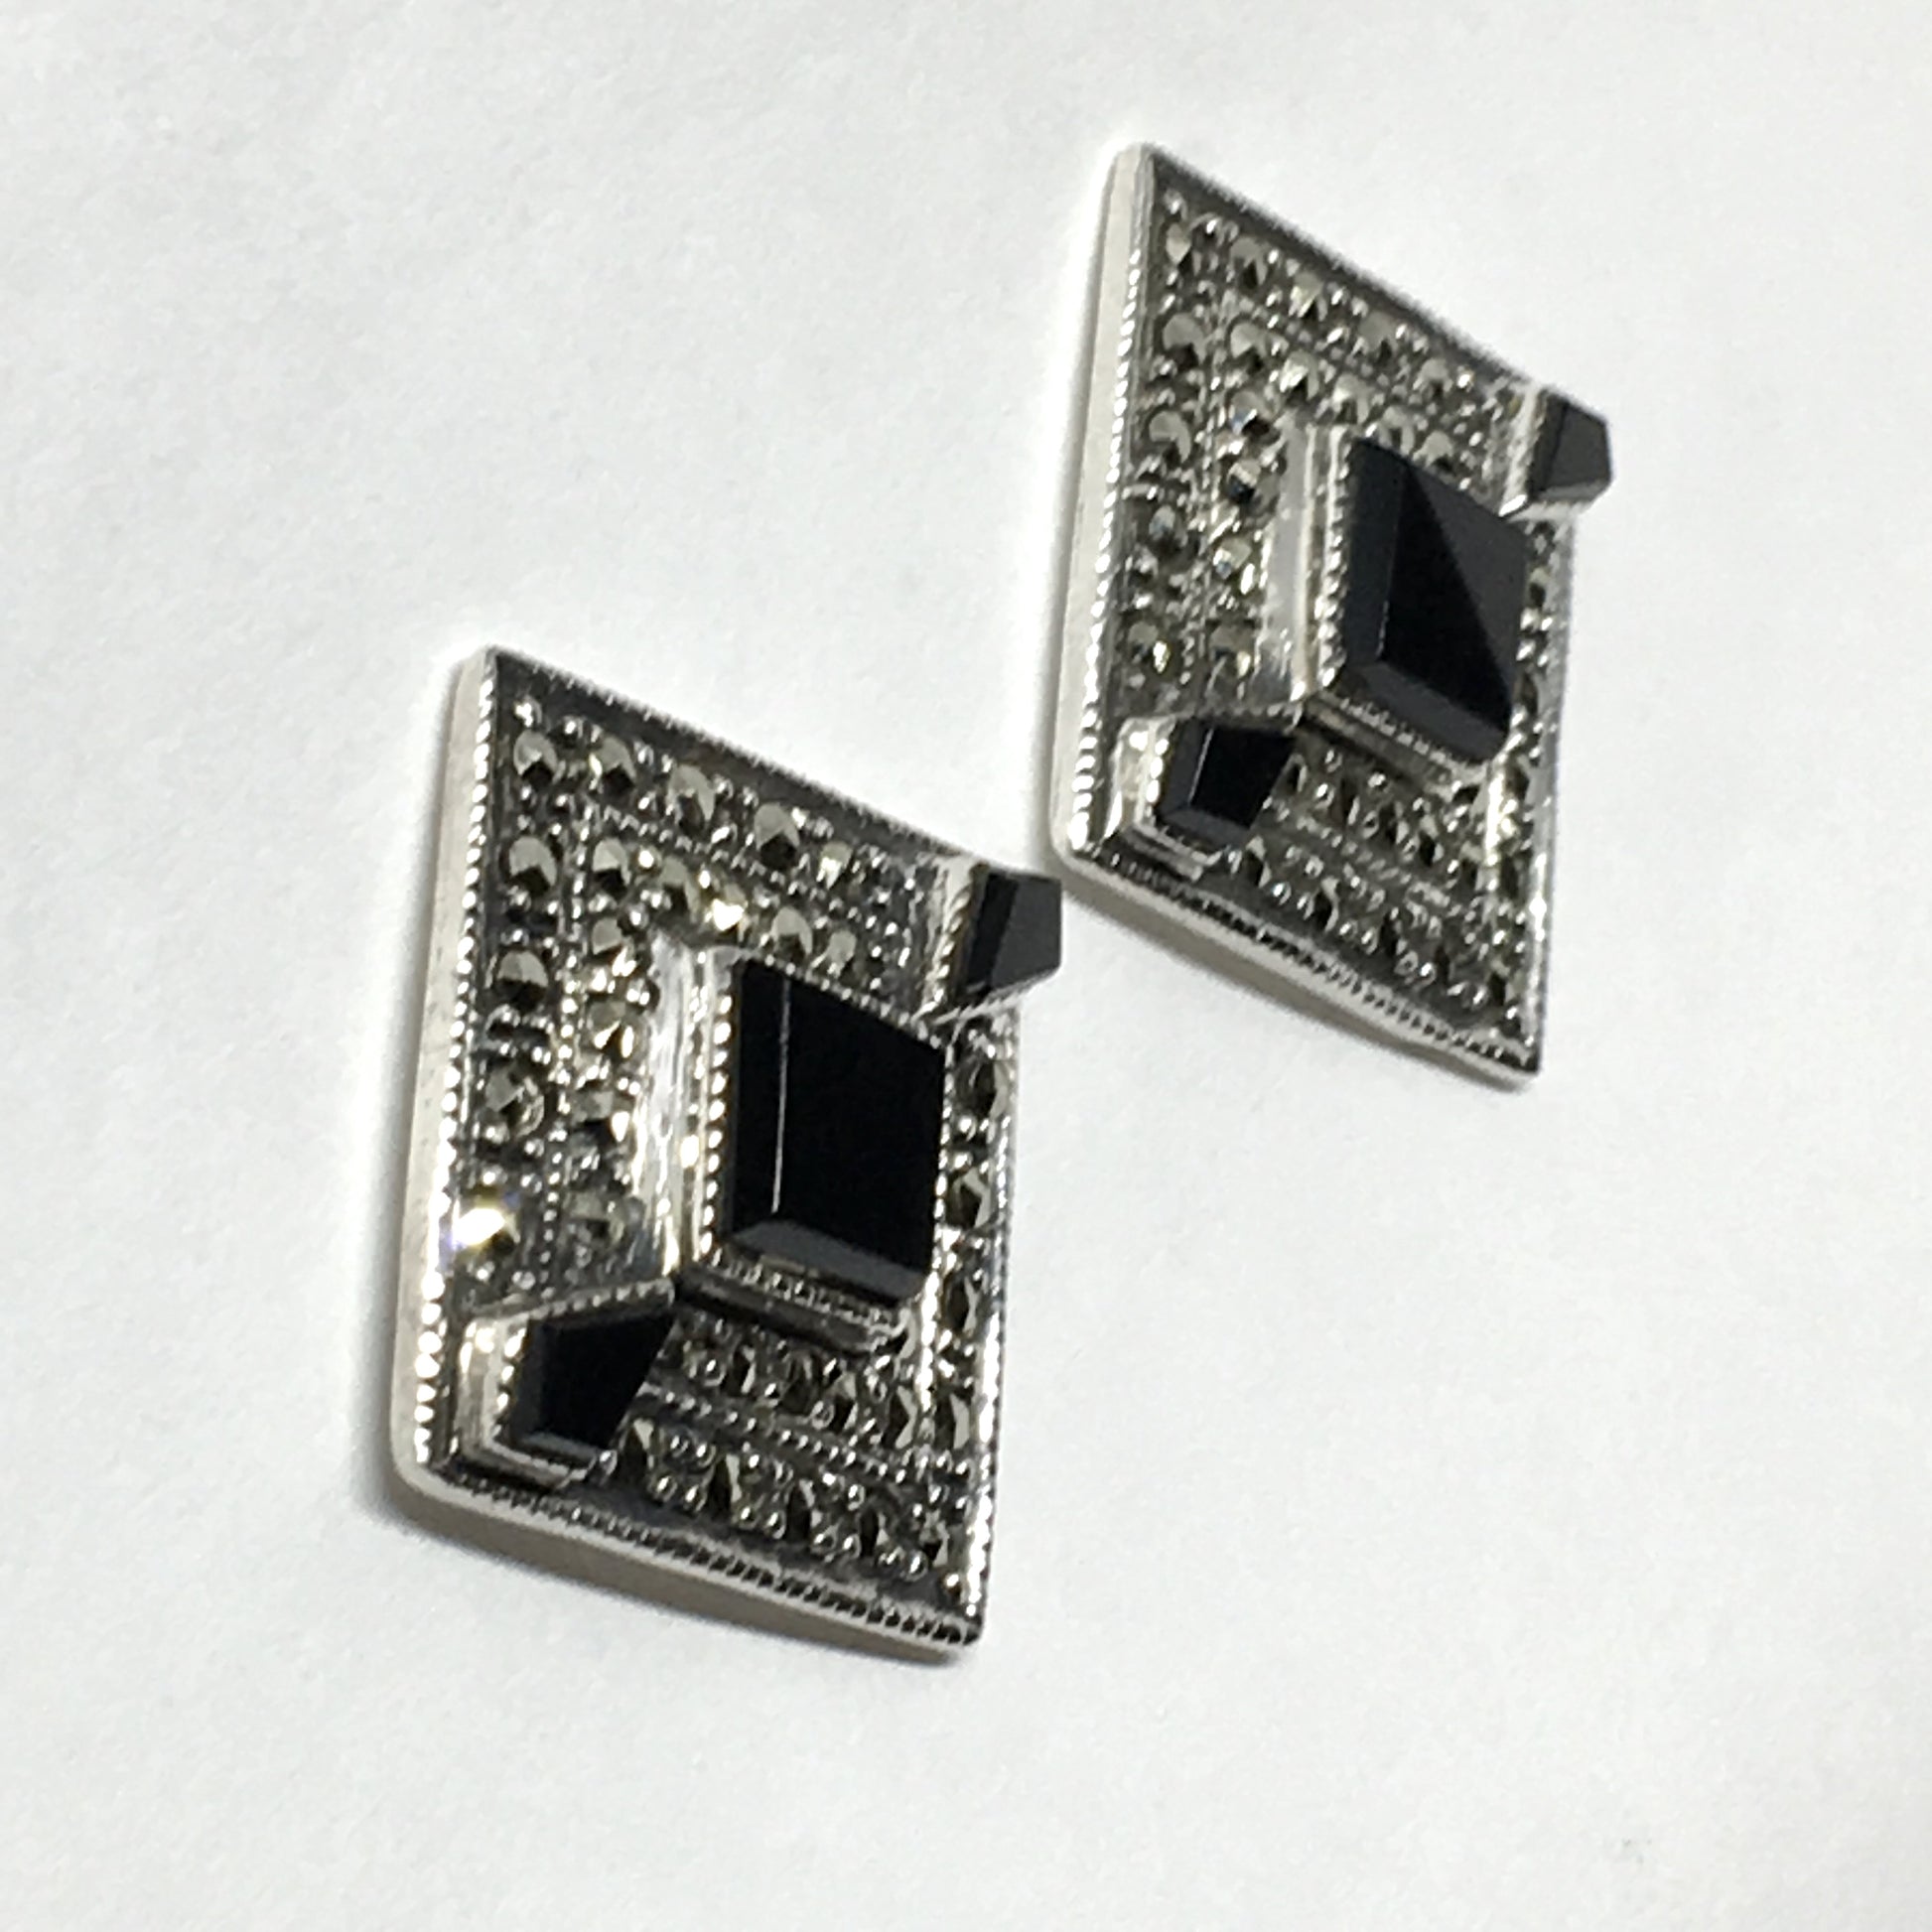 Earrings Womens - used Sterling Silver Black Marcasite Stone Diamond Design Drop Earrings | Blingschlingers Jewelry in USA